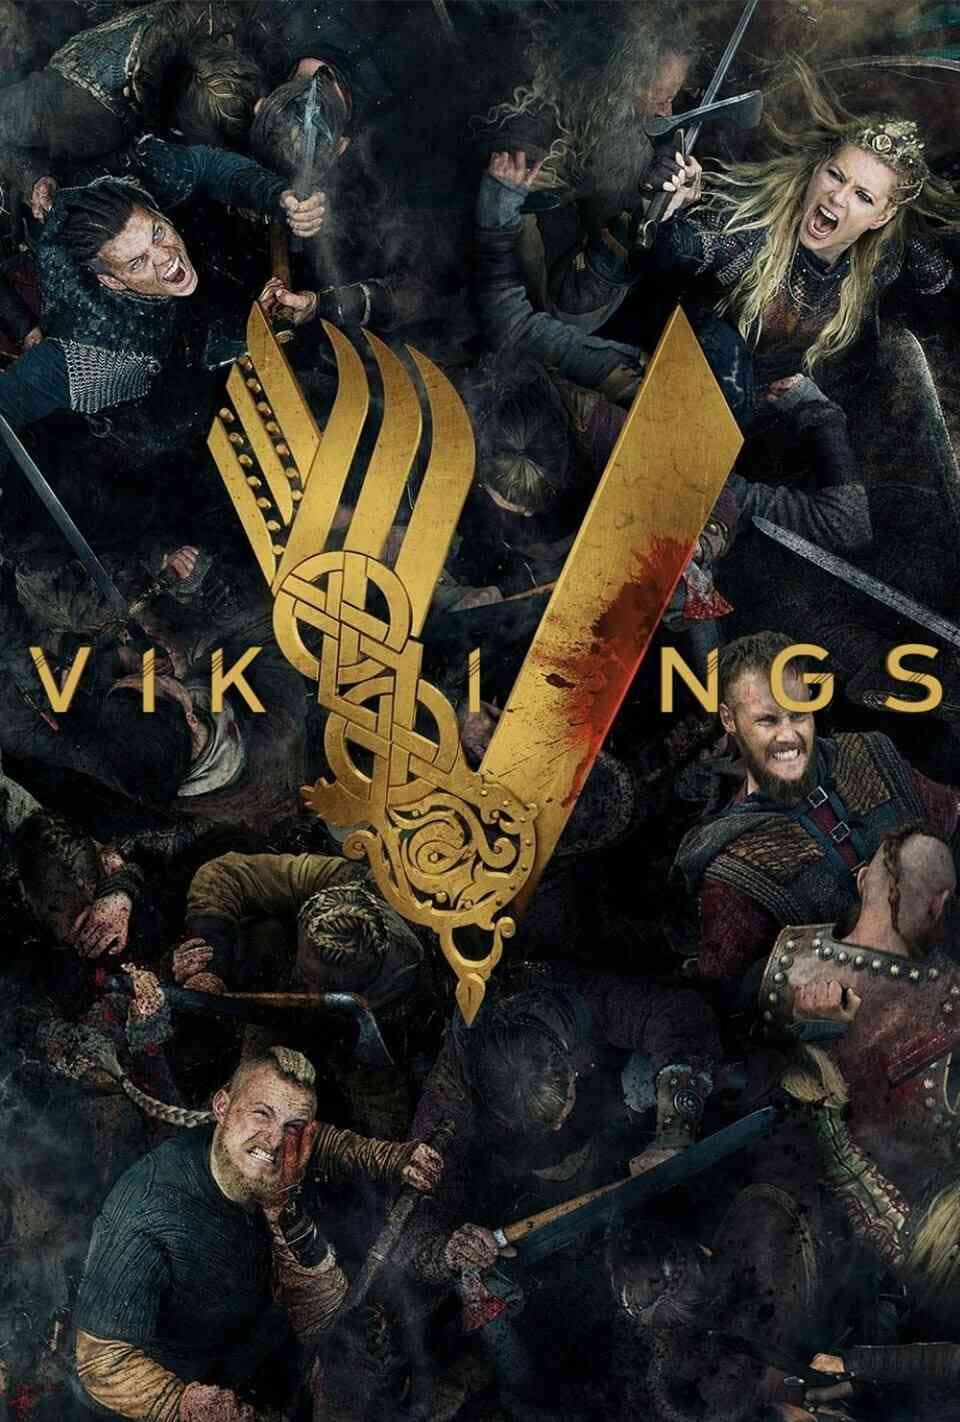 Read Vikings screenplay.